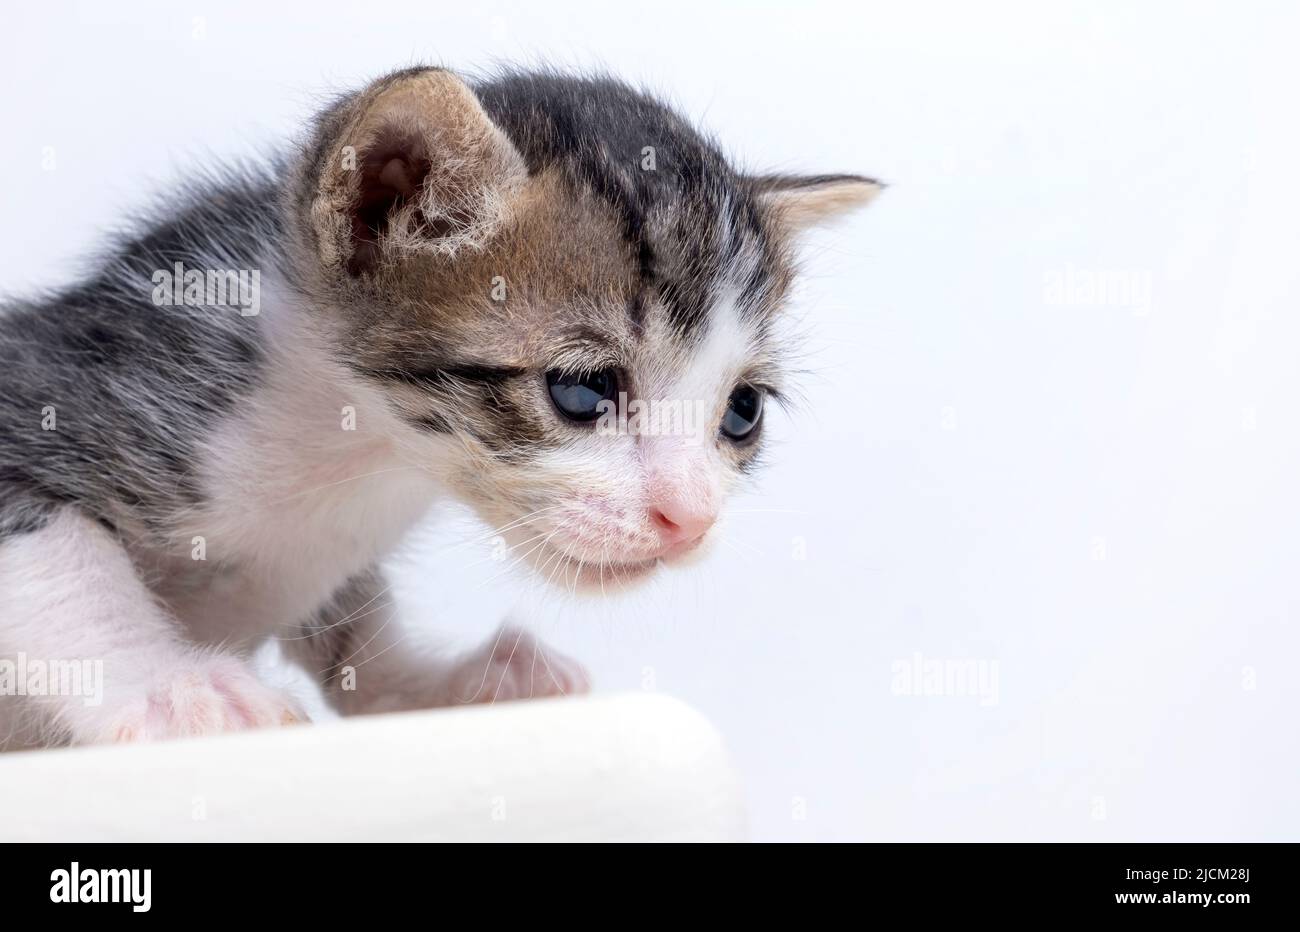 ritratto di un piccolo gattino triste e carino su sfondo bianco. gattino cortile non-pedigreed. Foto di alta qualità Foto Stock